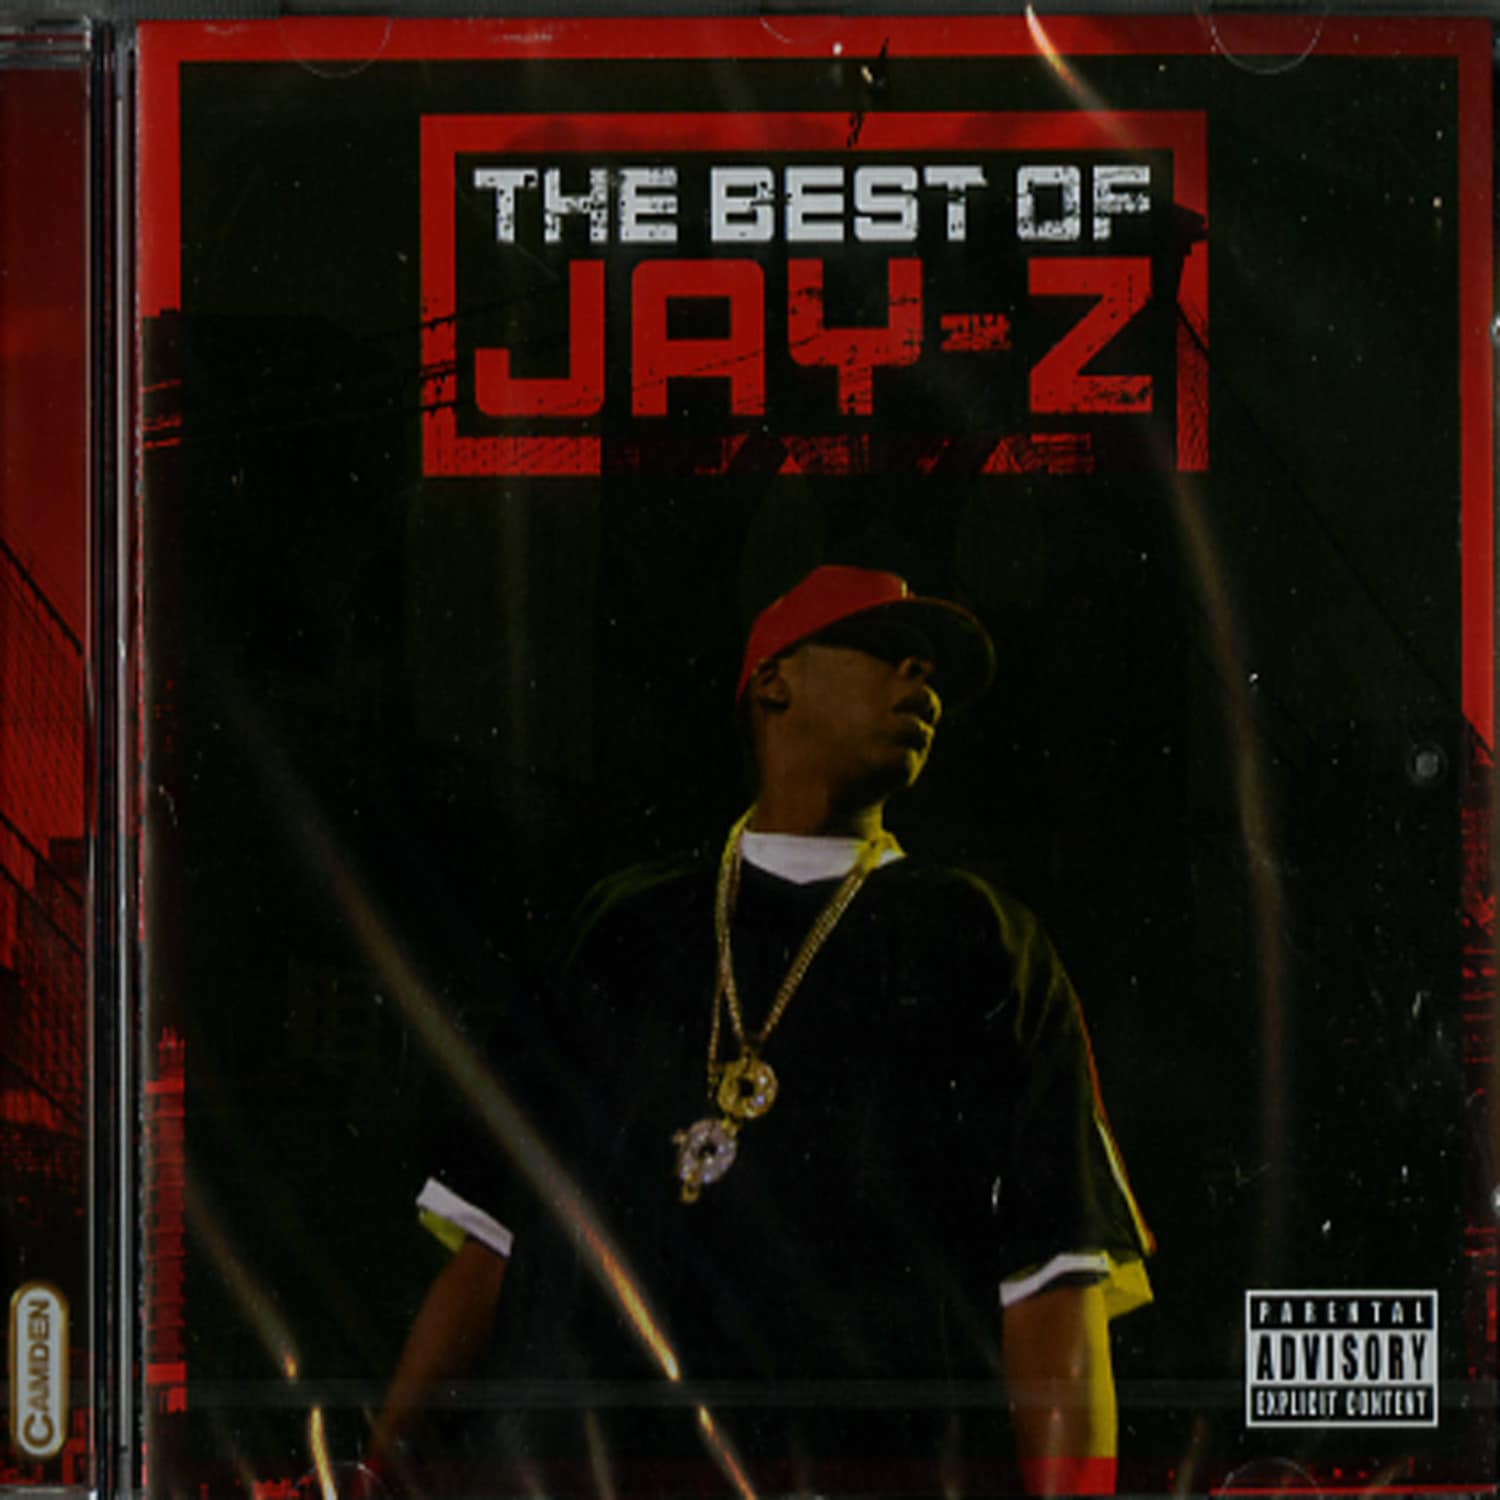 Jay-Z - BEST OF 